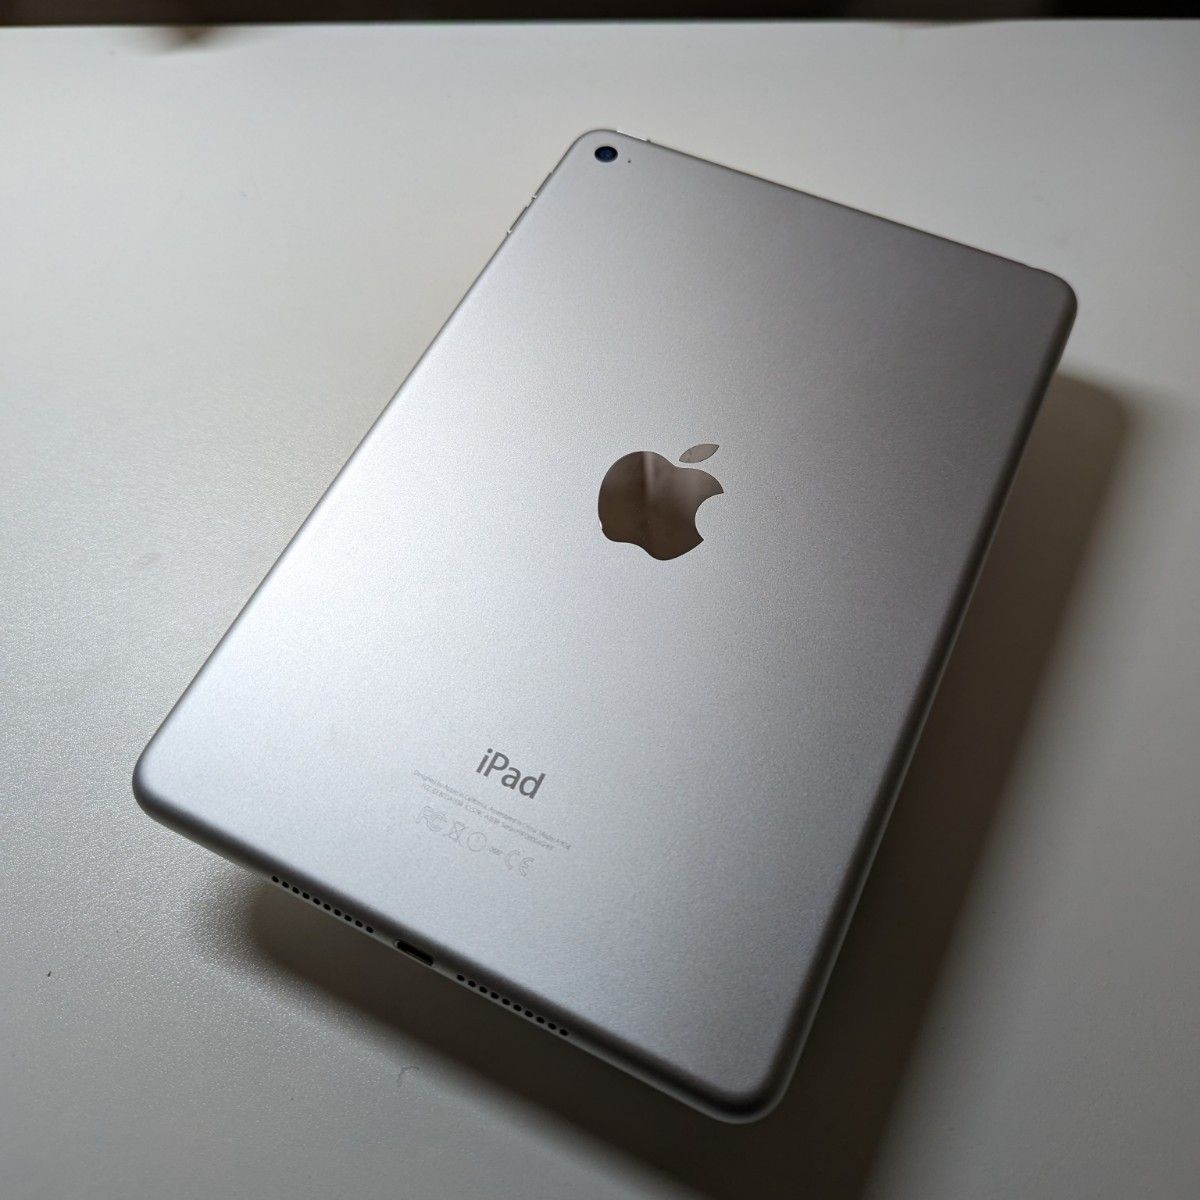 魅了 セルラーモデル iPad mini 4 iPad mini4 Wi-Fiモデル 128GB